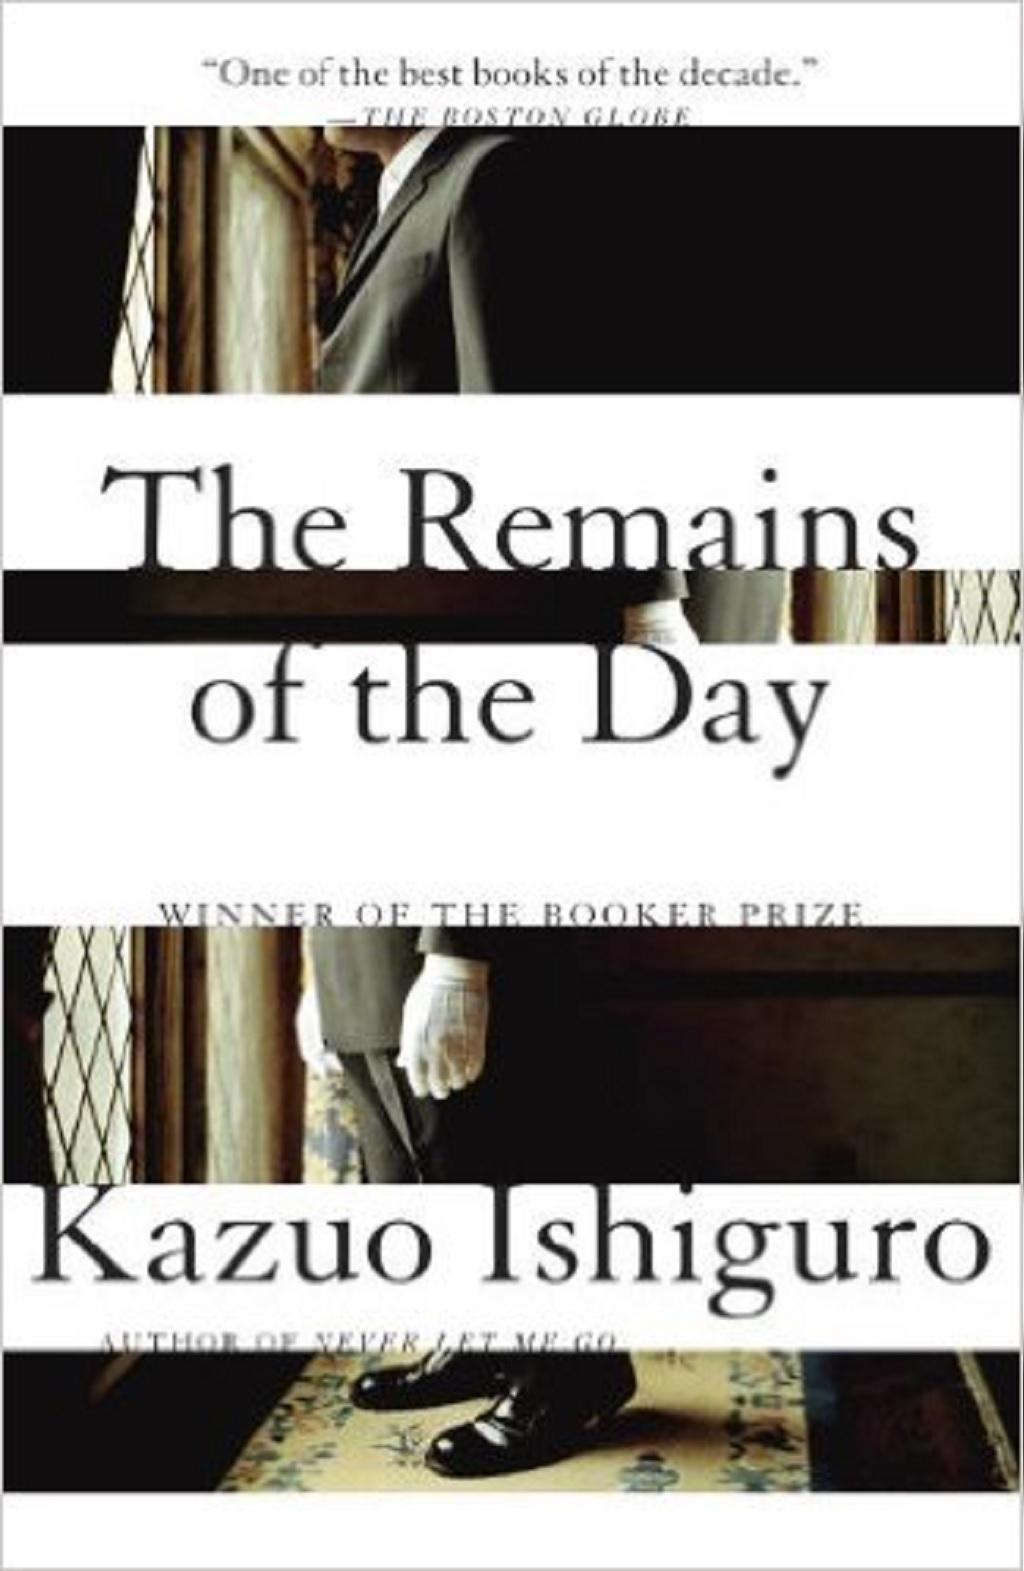  بازماندهٔ روز - کازوئو ایشی گورو